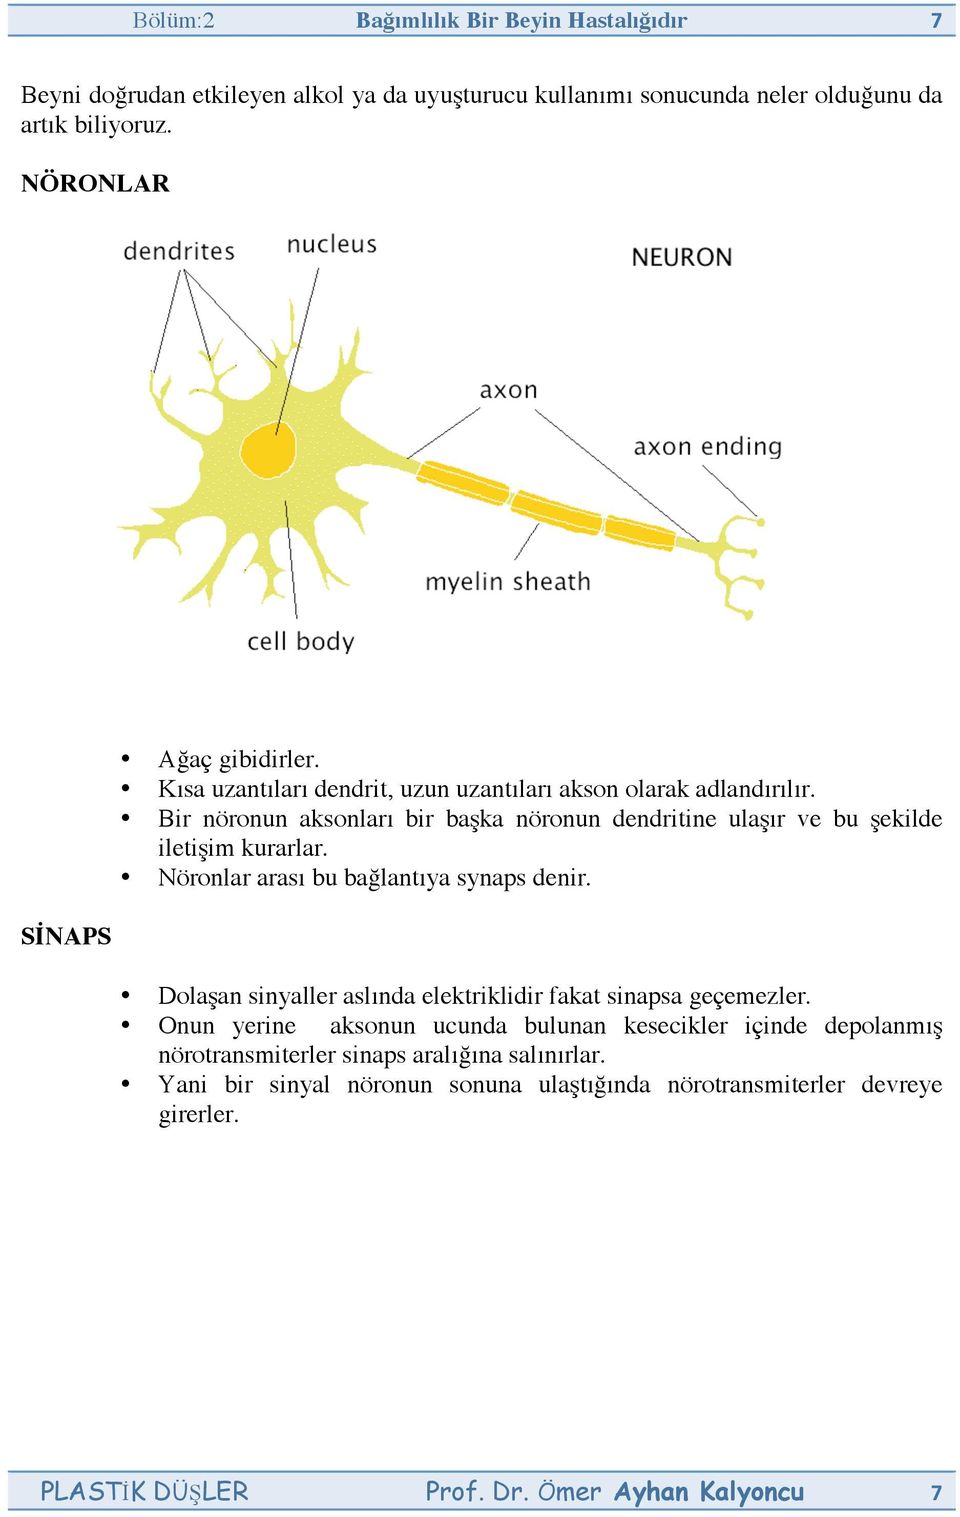 Bir nöronun aksonları bir başka nöronun dendritine ulaşır ve bu şekilde iletişim kurarlar. Nöronlar arası bu bağlantıya synaps denir.